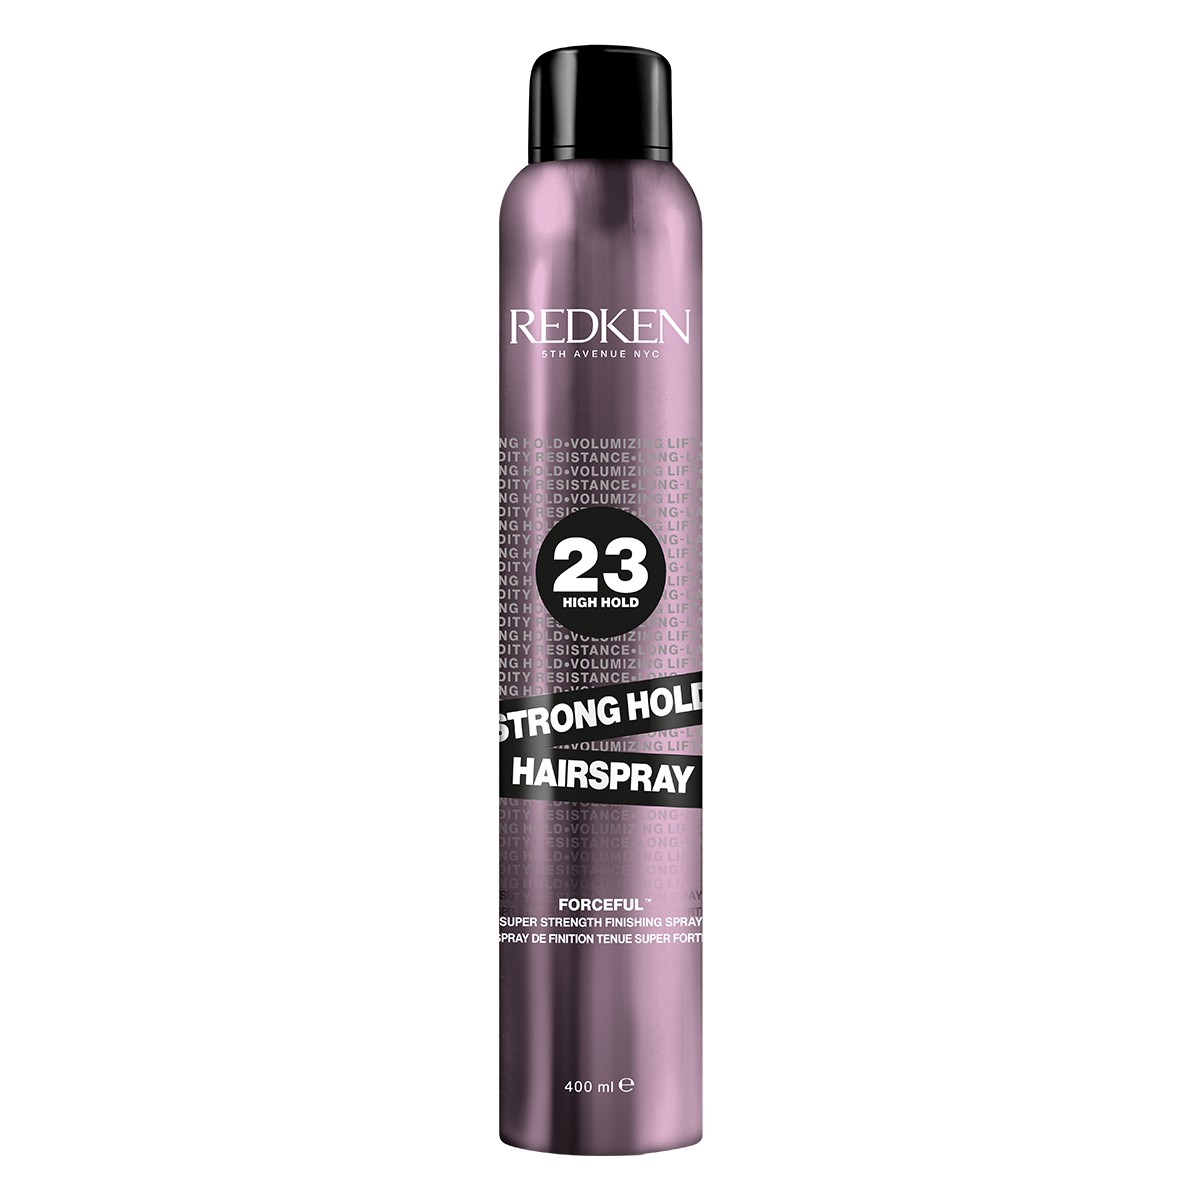 Redken 2022 EU Hairspray Strong Hold Hairspray 400ml Ecom ATF Packshot 1200x1200 1